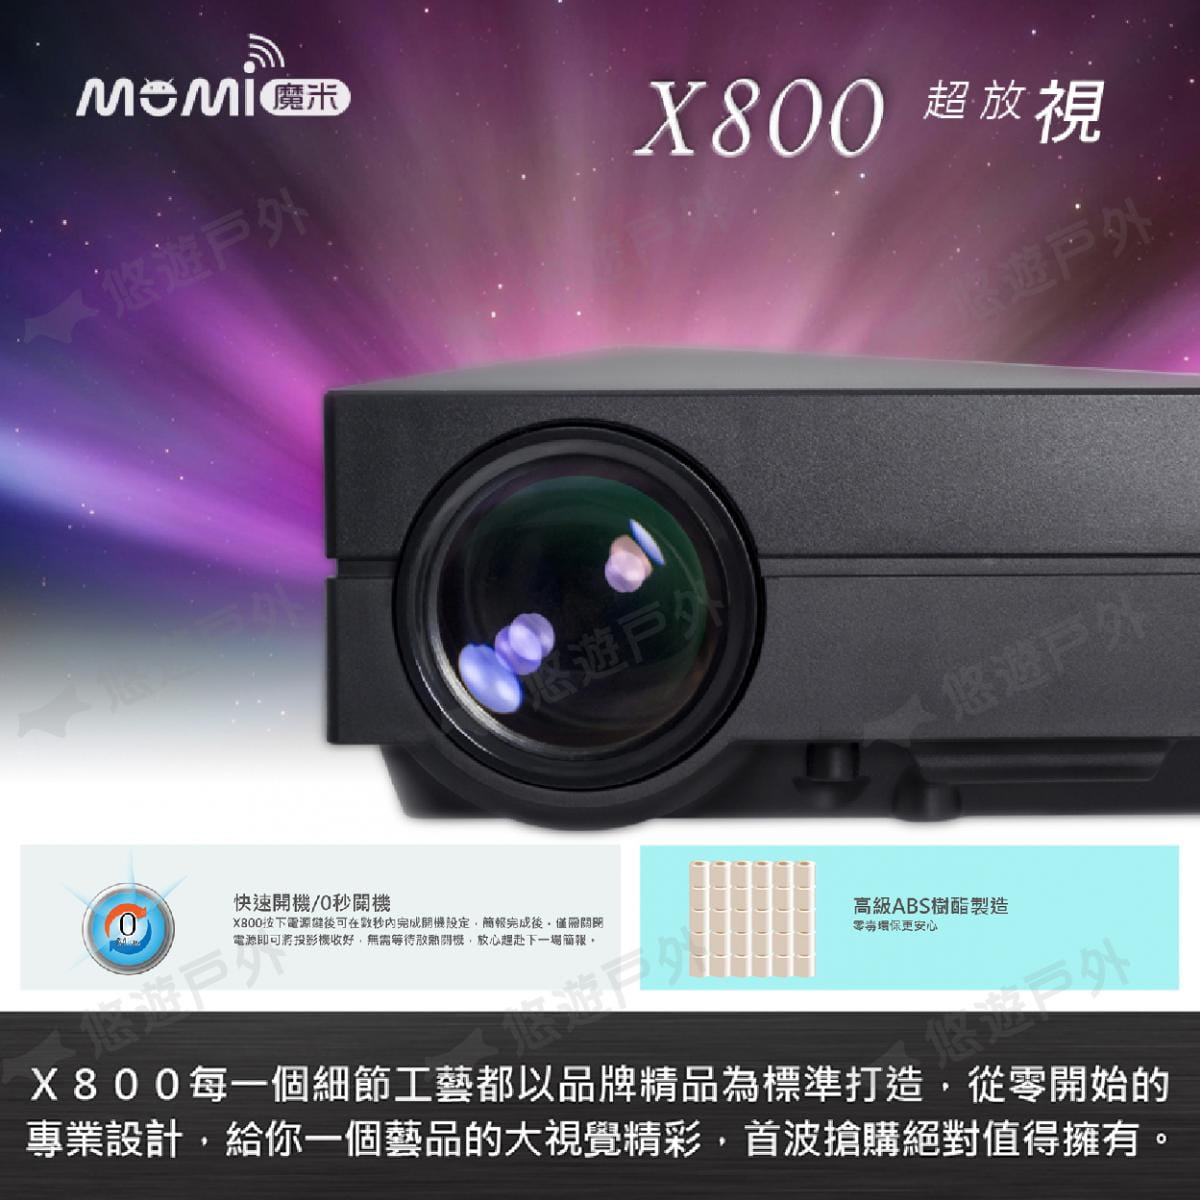 【MOMI魔米】X800微型投影機+50吋布幕 (悠遊戶外) 2